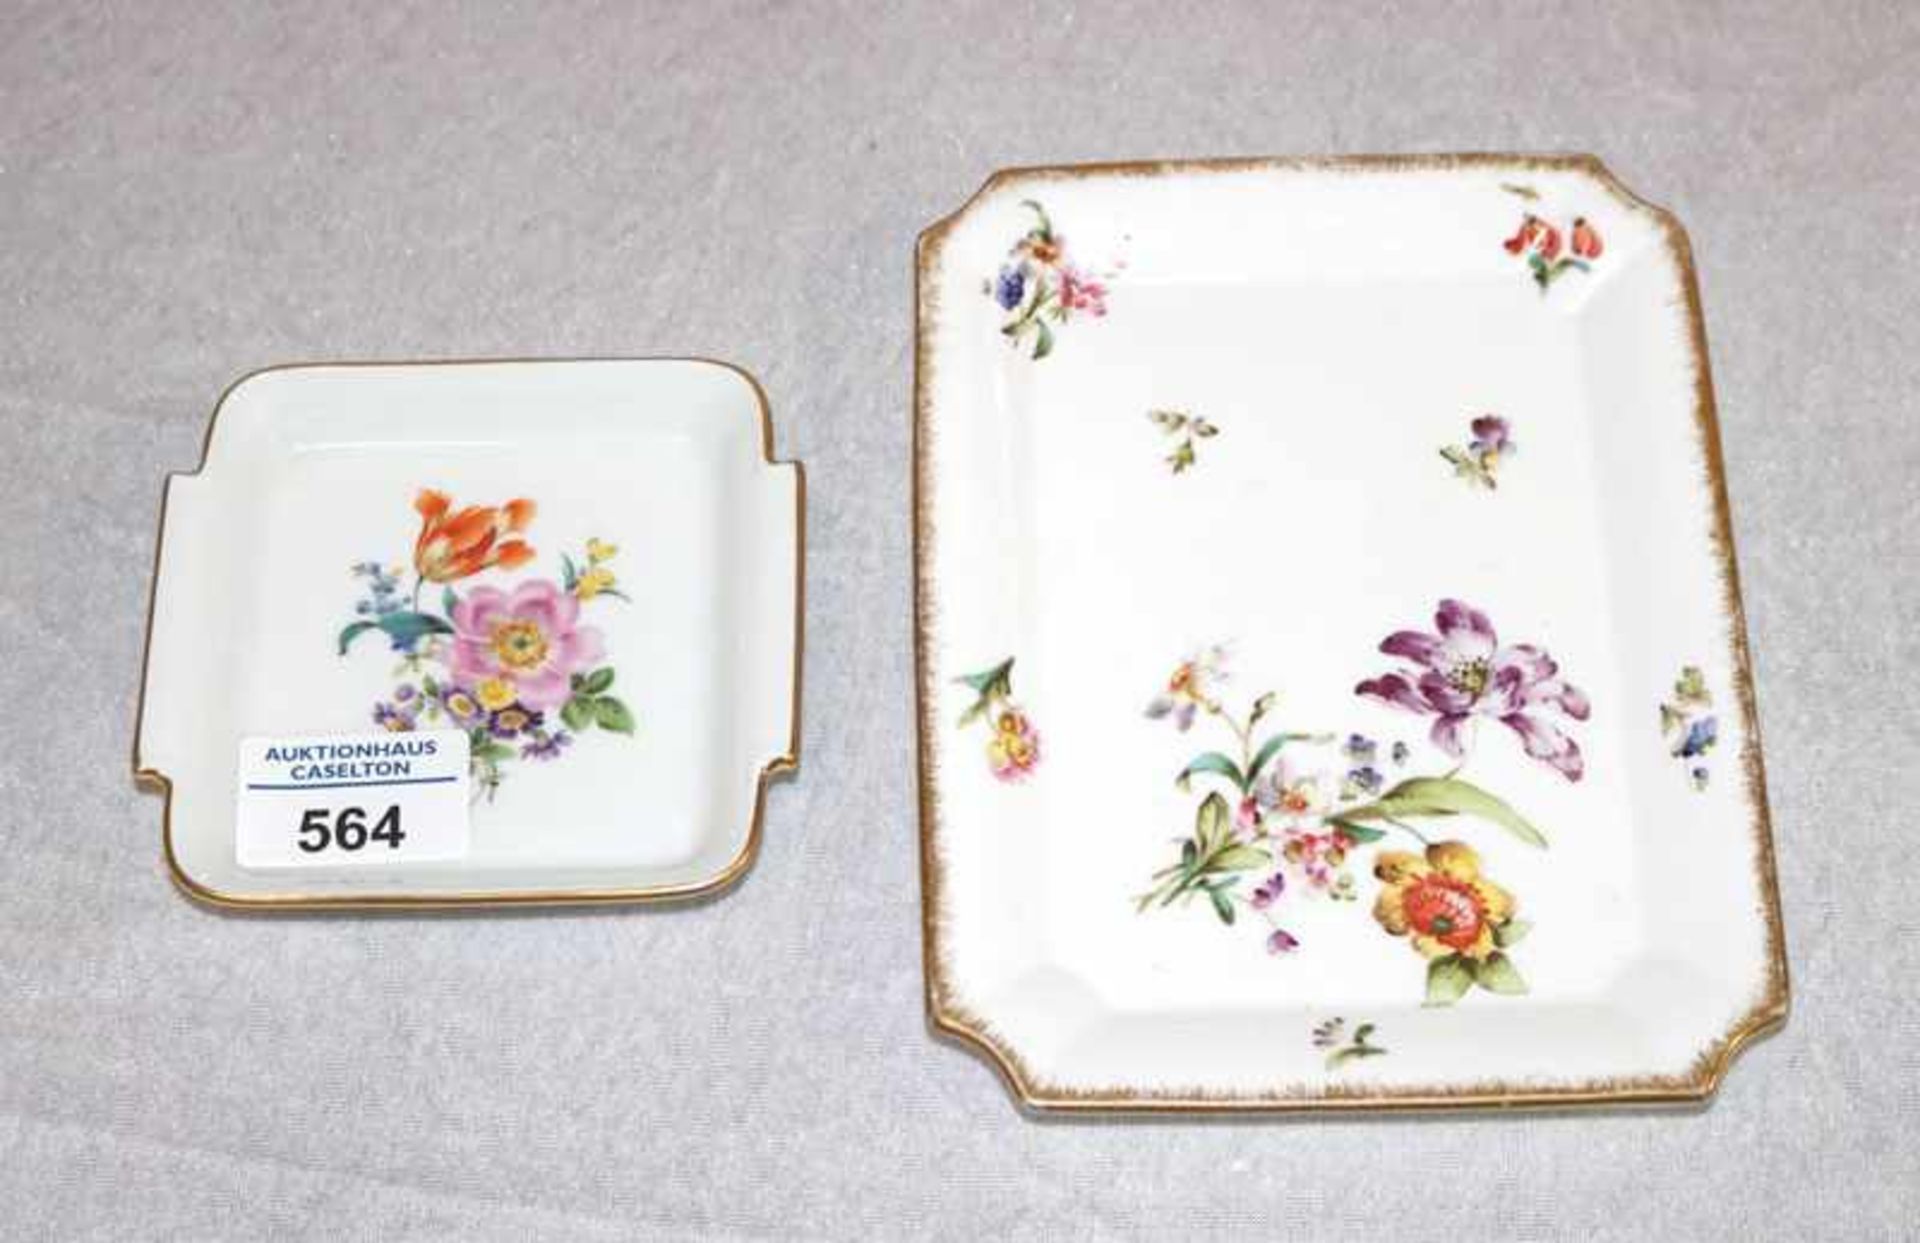 Meissen Schälchen mit Blumenmalerei und Goldrand, H 2 cm, 10 cm x 10 cm, und Porzellanplatte mit